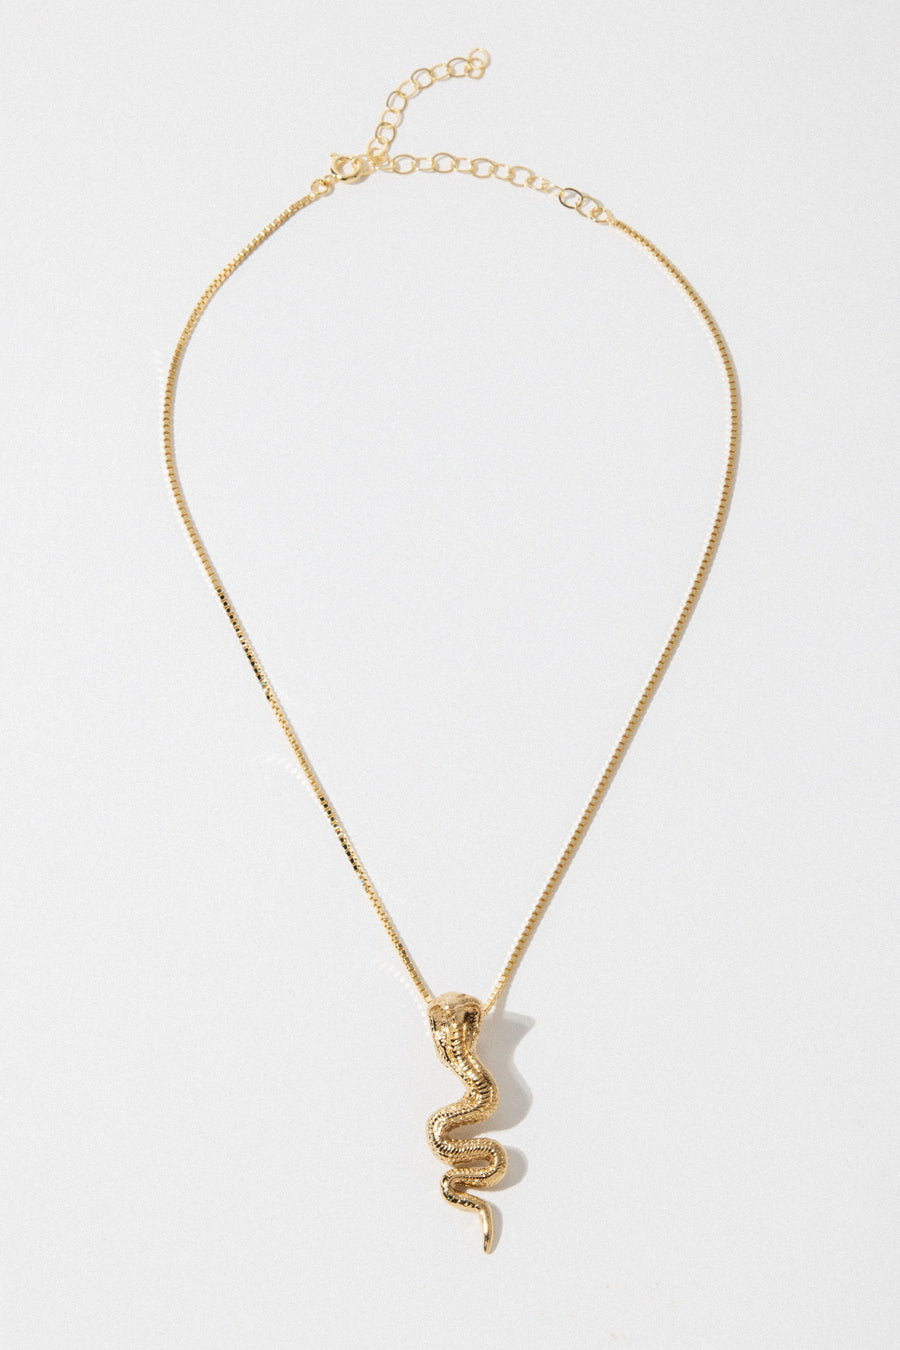 Dona Italia Jewelry Gold / 14 Inches Gold Cobra Necklace